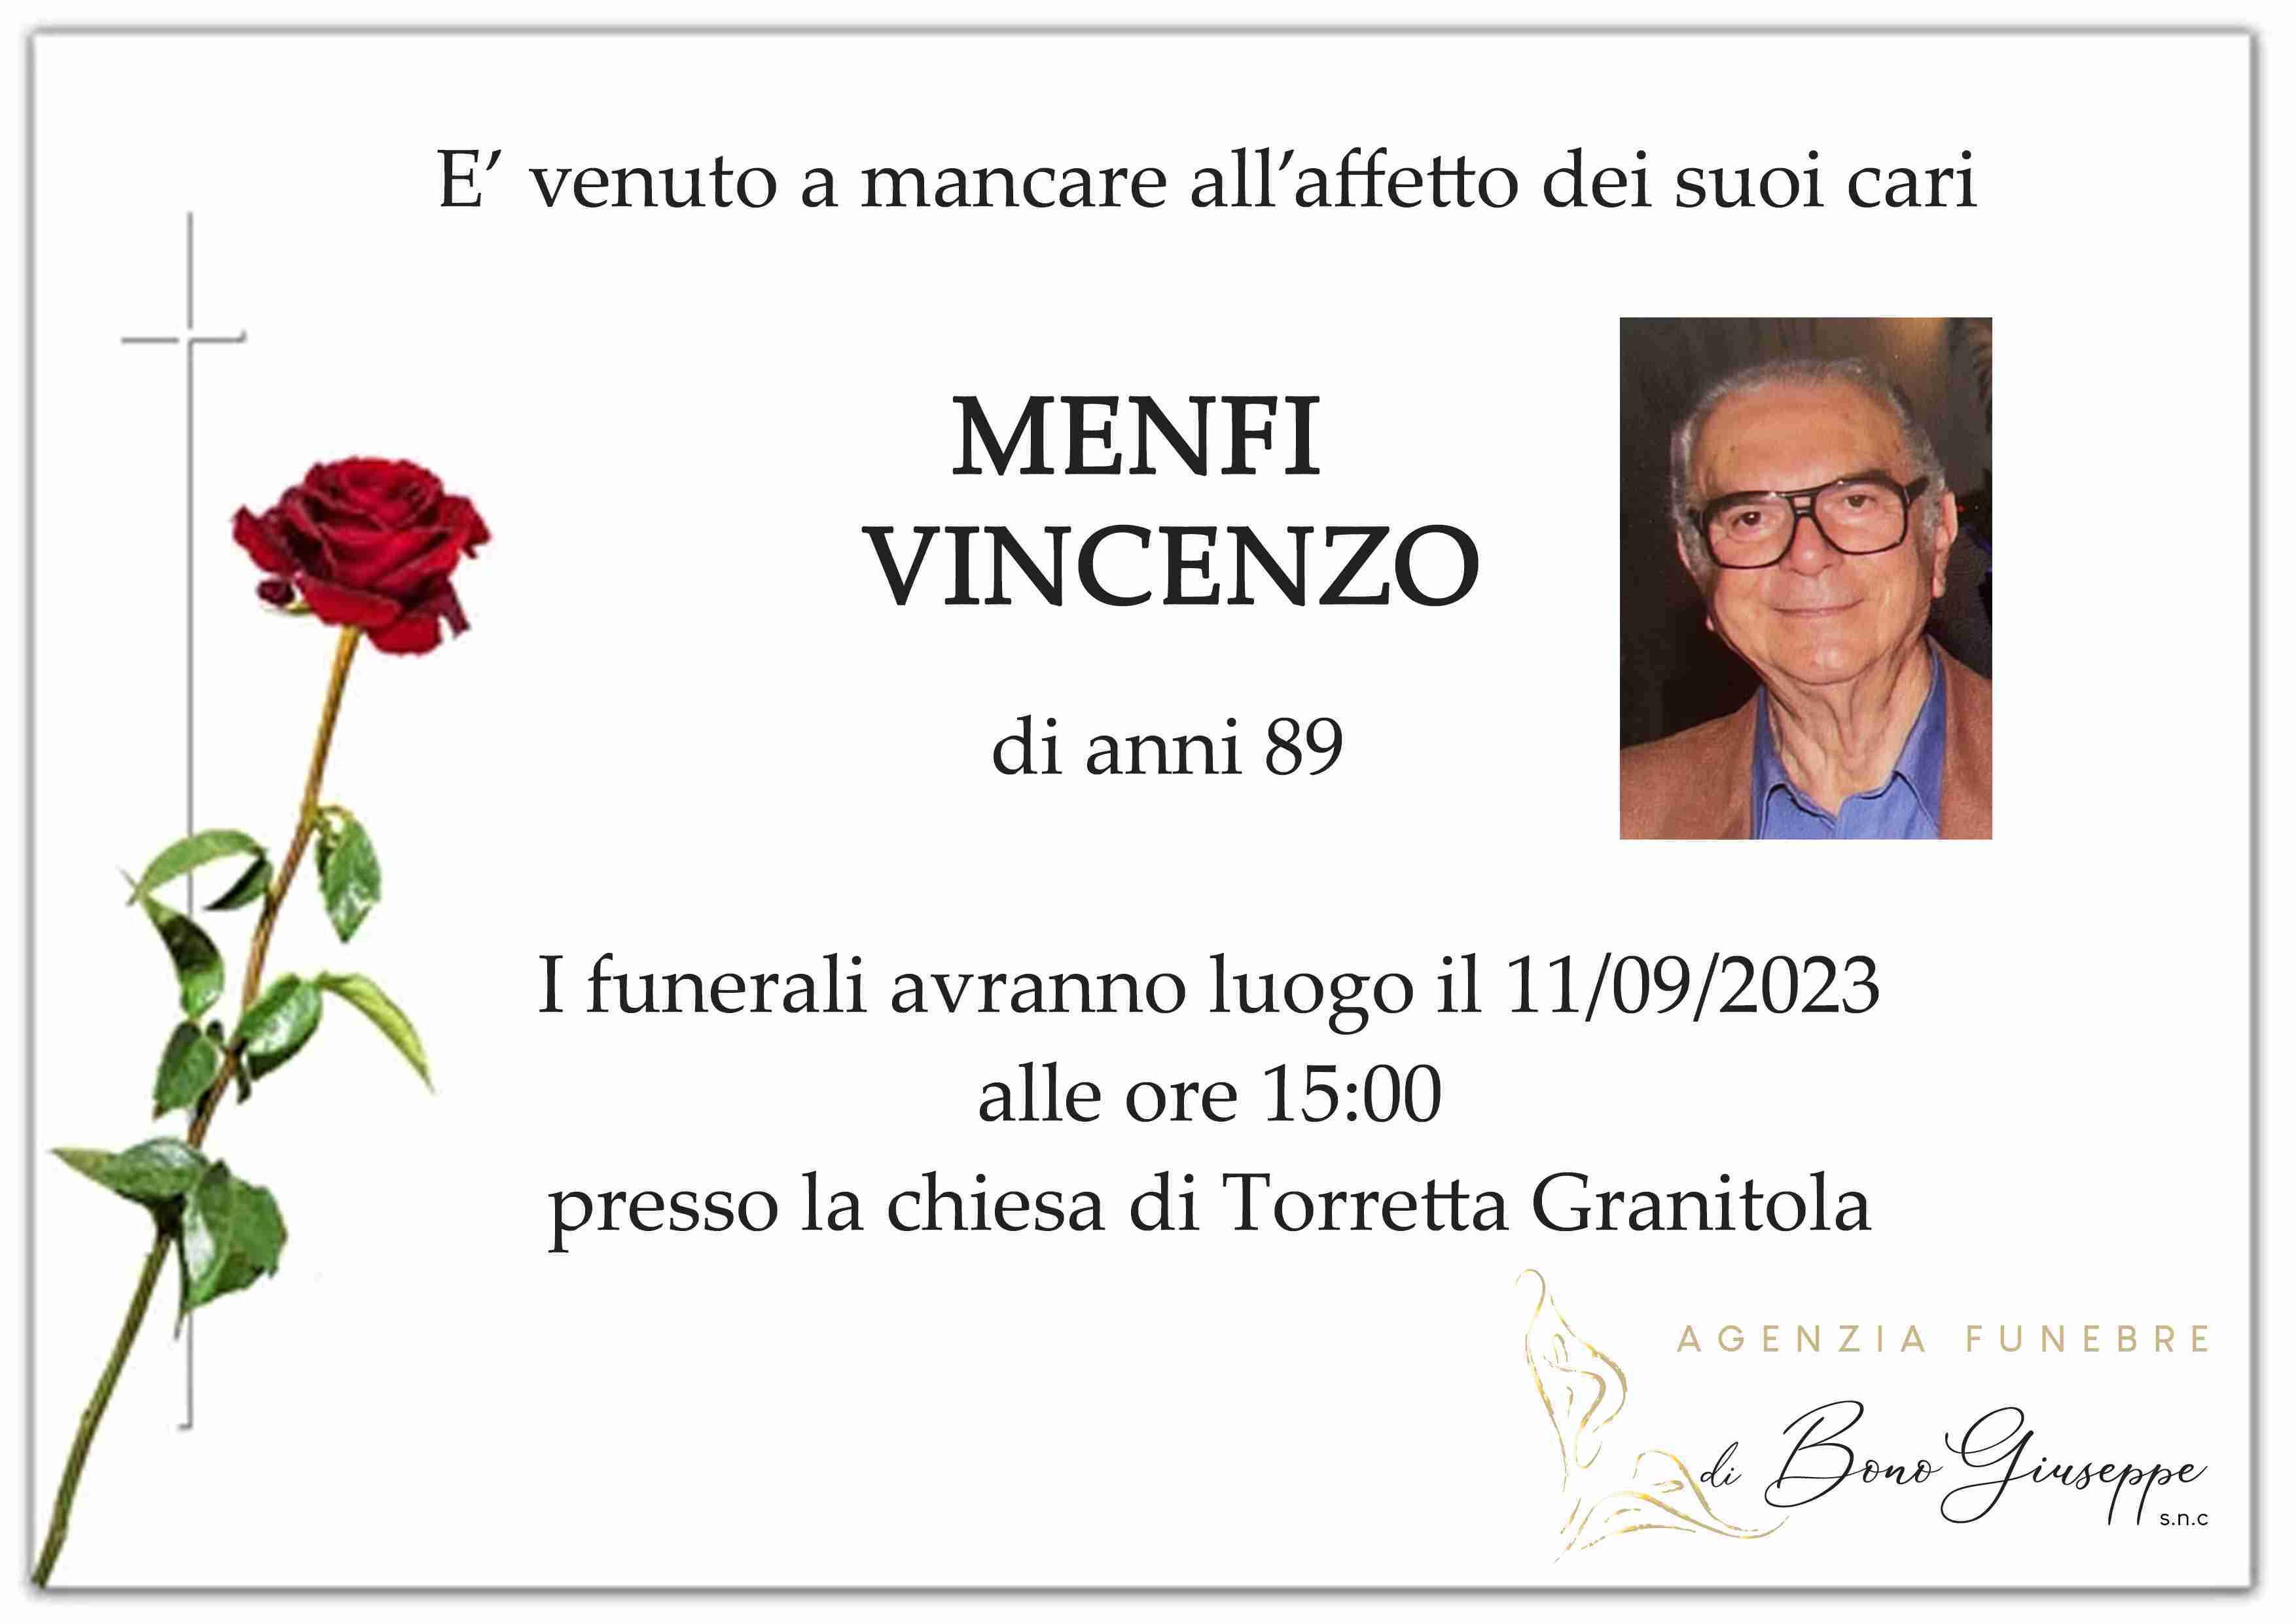 Vincenzo Menfi